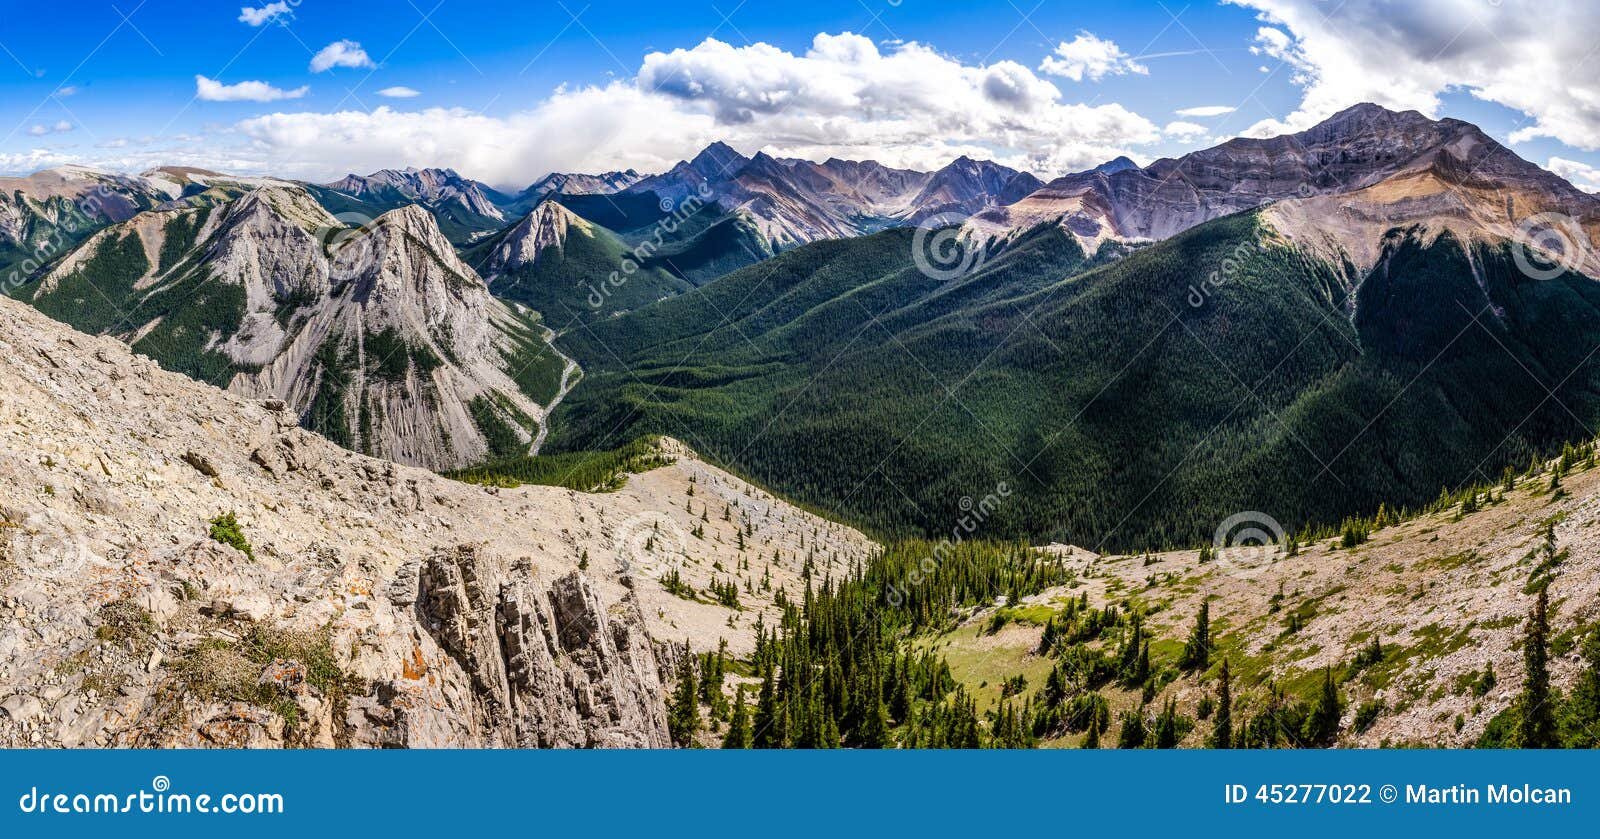 vista panoramica de las montanas rocosas